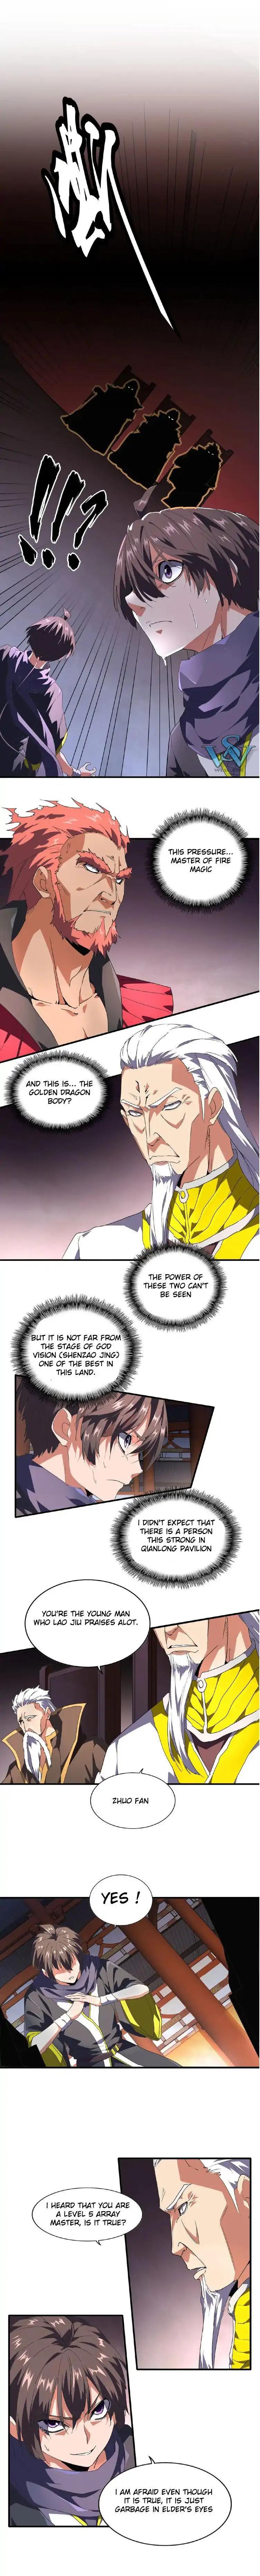 Magic Emperor Chapter 22 page 1 - Mangakakalot